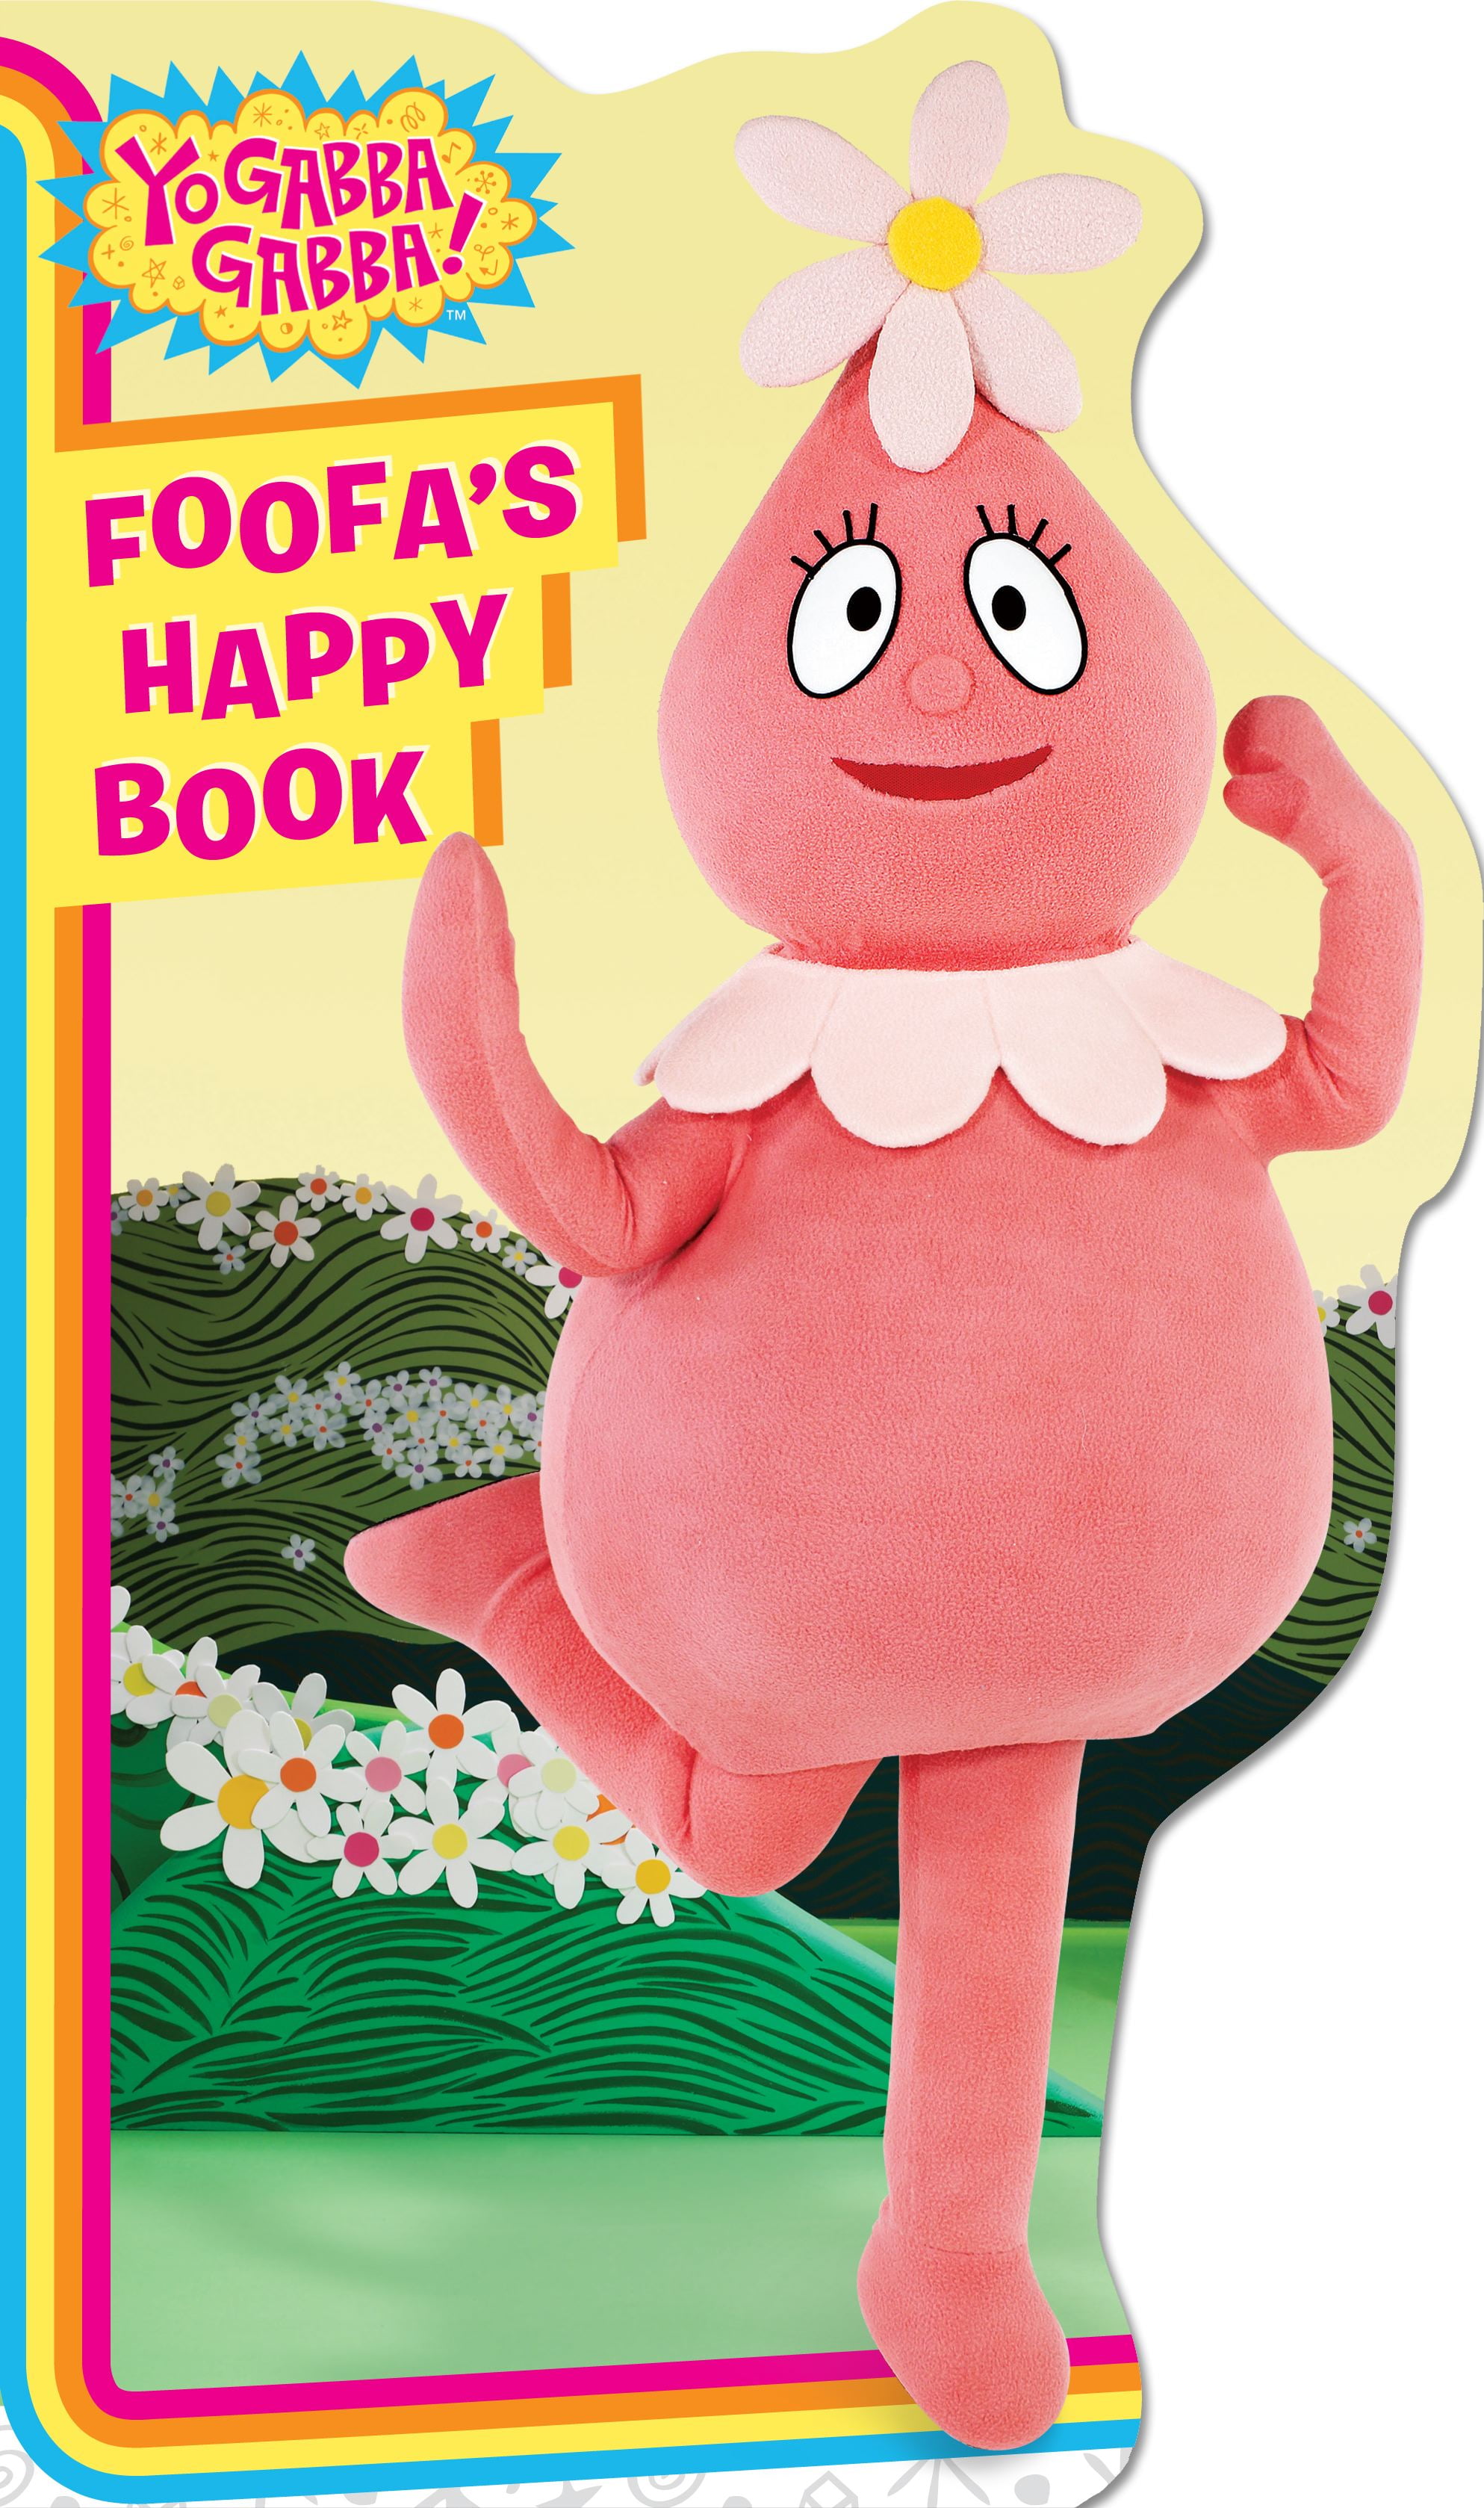 Yo Gabba Gabba!: Foofa's Happy Book (Board book)